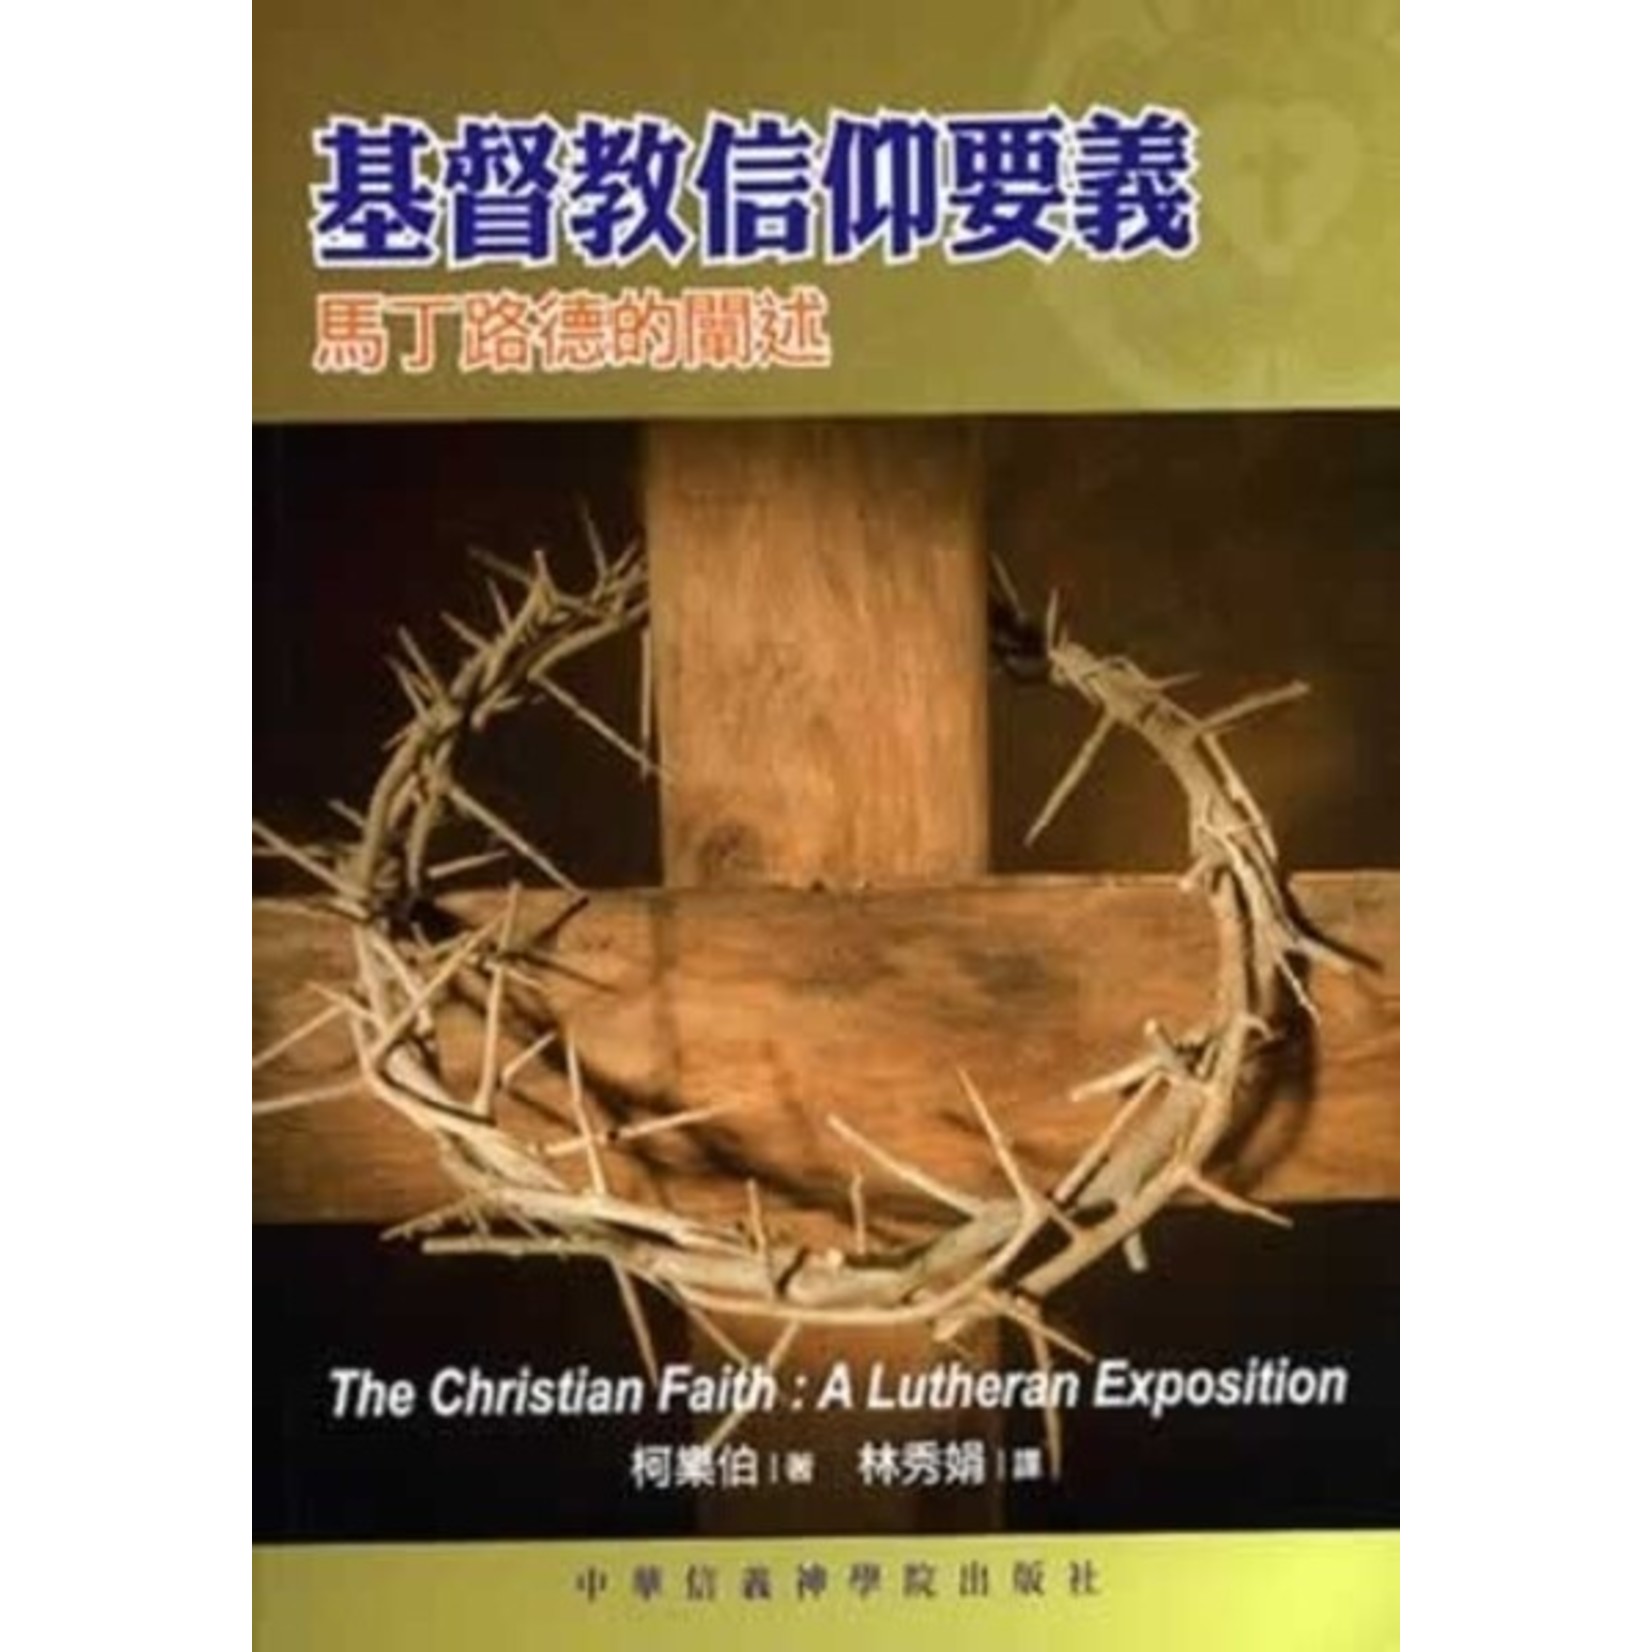 中華信義神學院 China Lutheran Seminary 基督教信仰要義：馬丁路德的闡述 The Christian Faith: A Lutheran Exposition